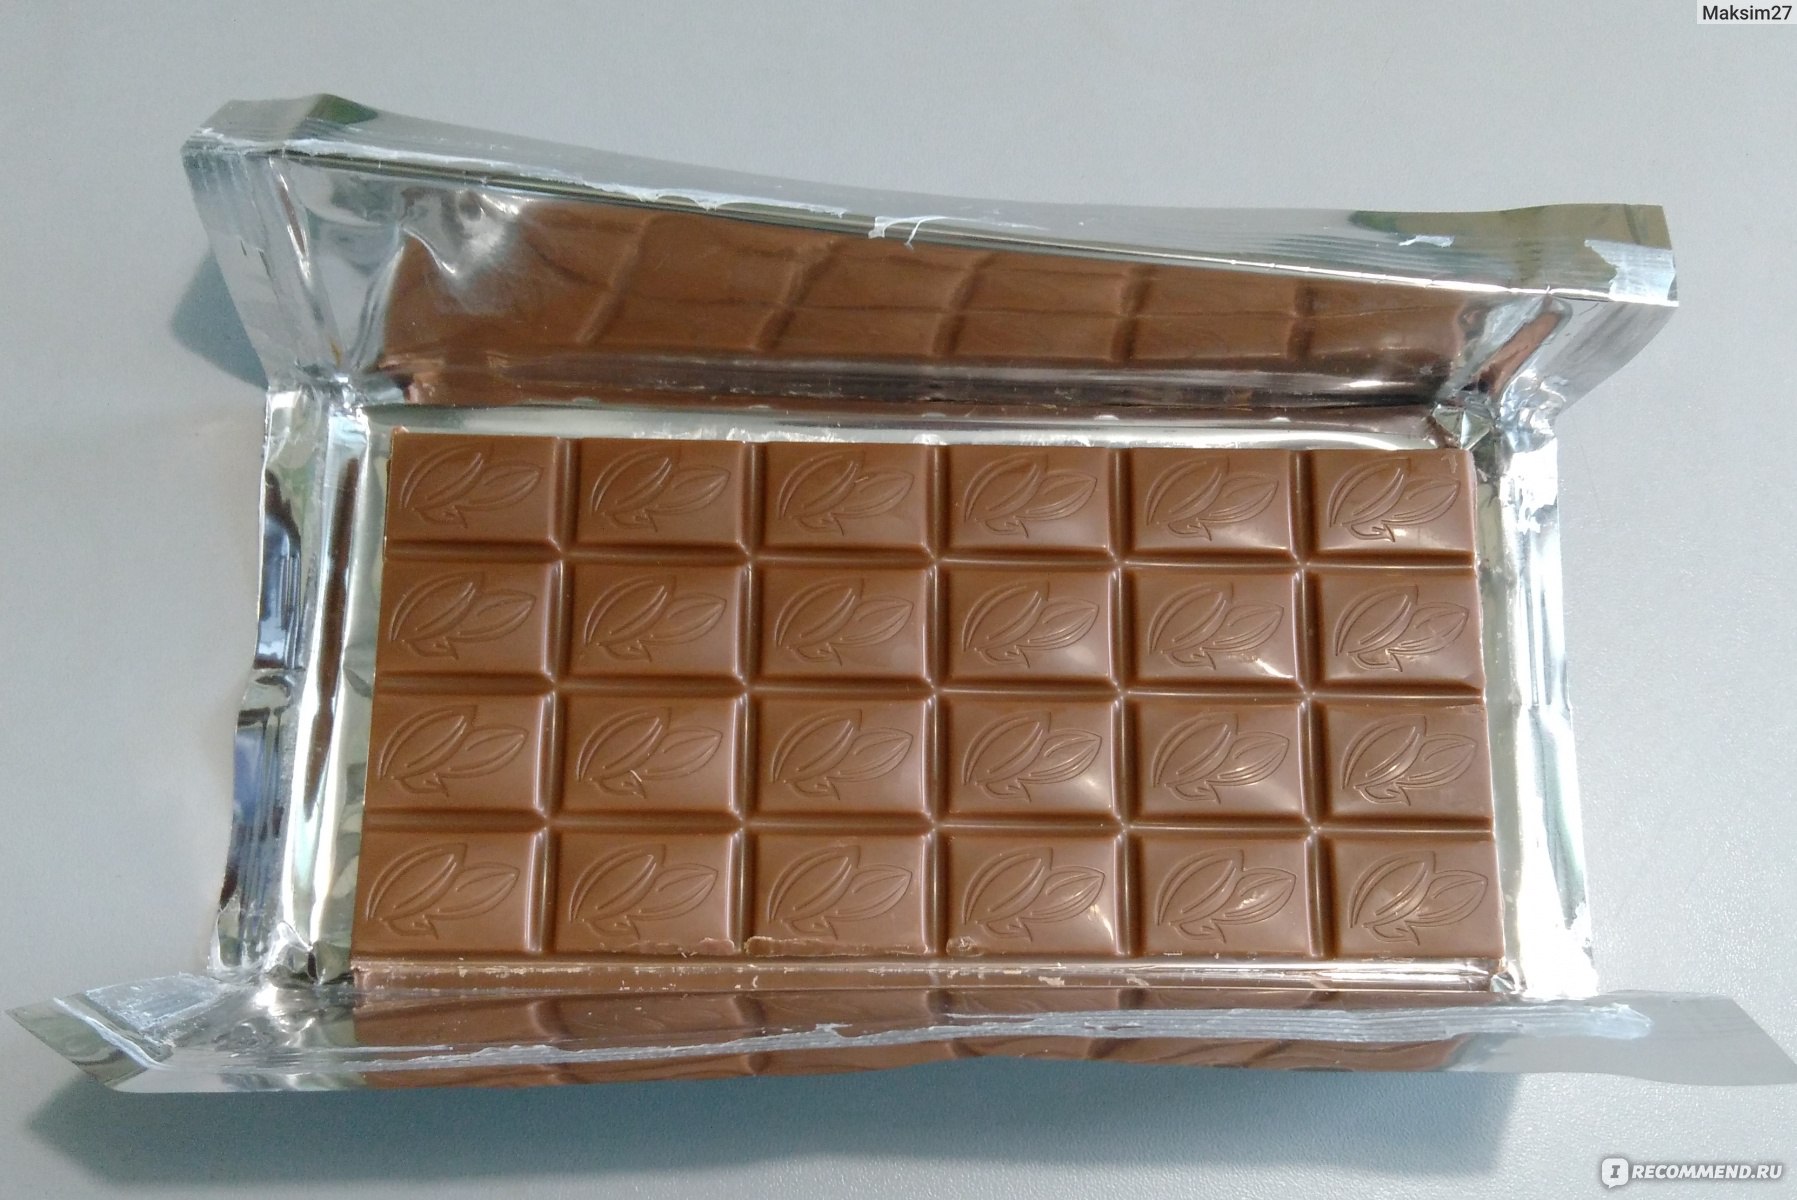 Шоколадка имеет длину 20. Дешевый шоколад. Самый дешевый шоколад. Вкусные и недорогие шоколадки. Палетка в виде шоколадки.